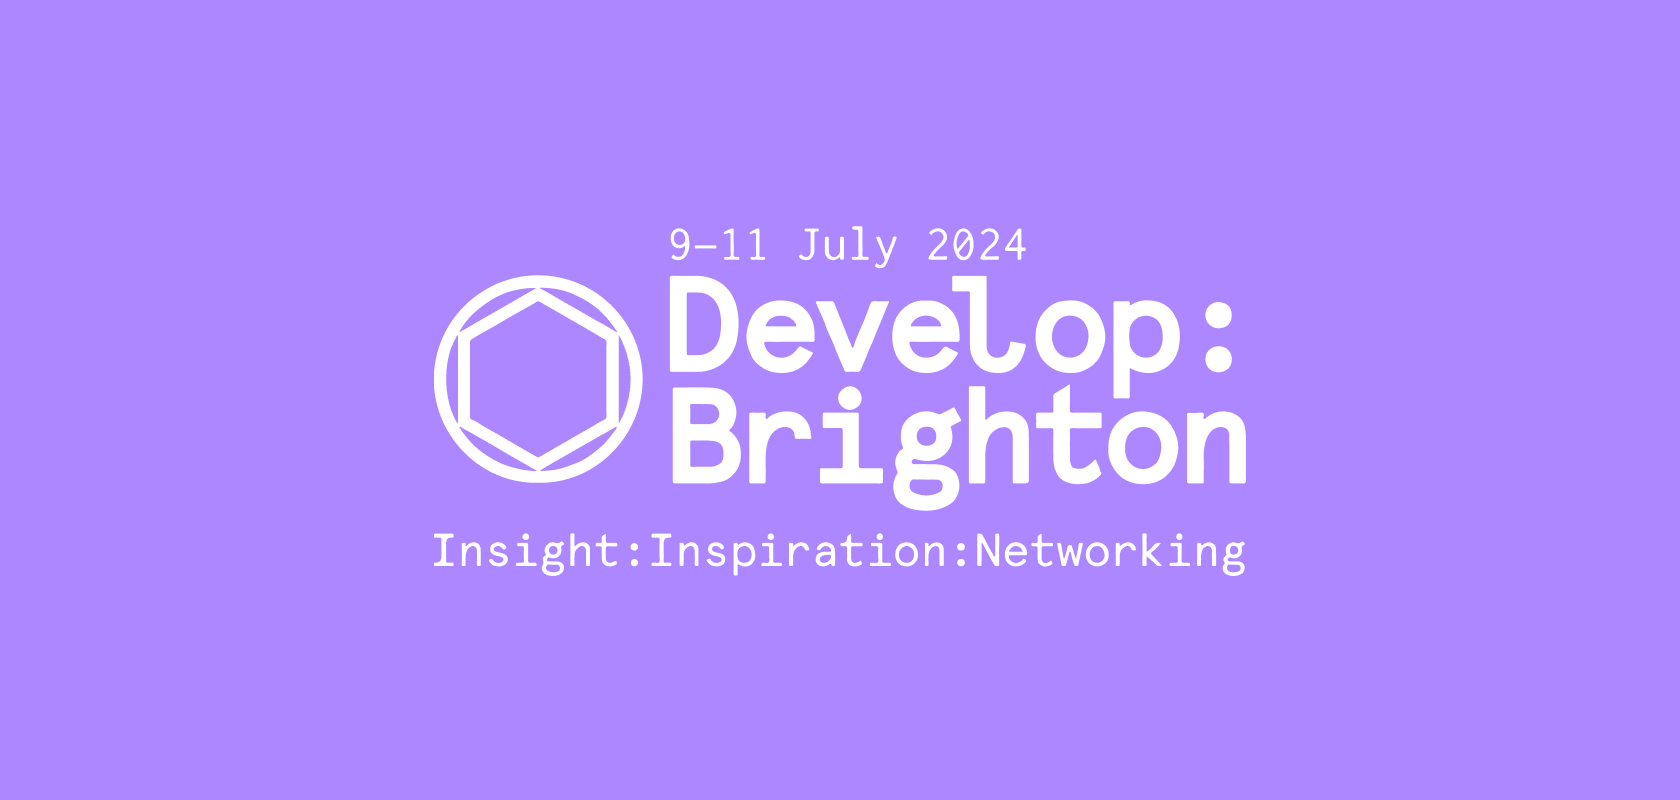 Develop:Brighton conference